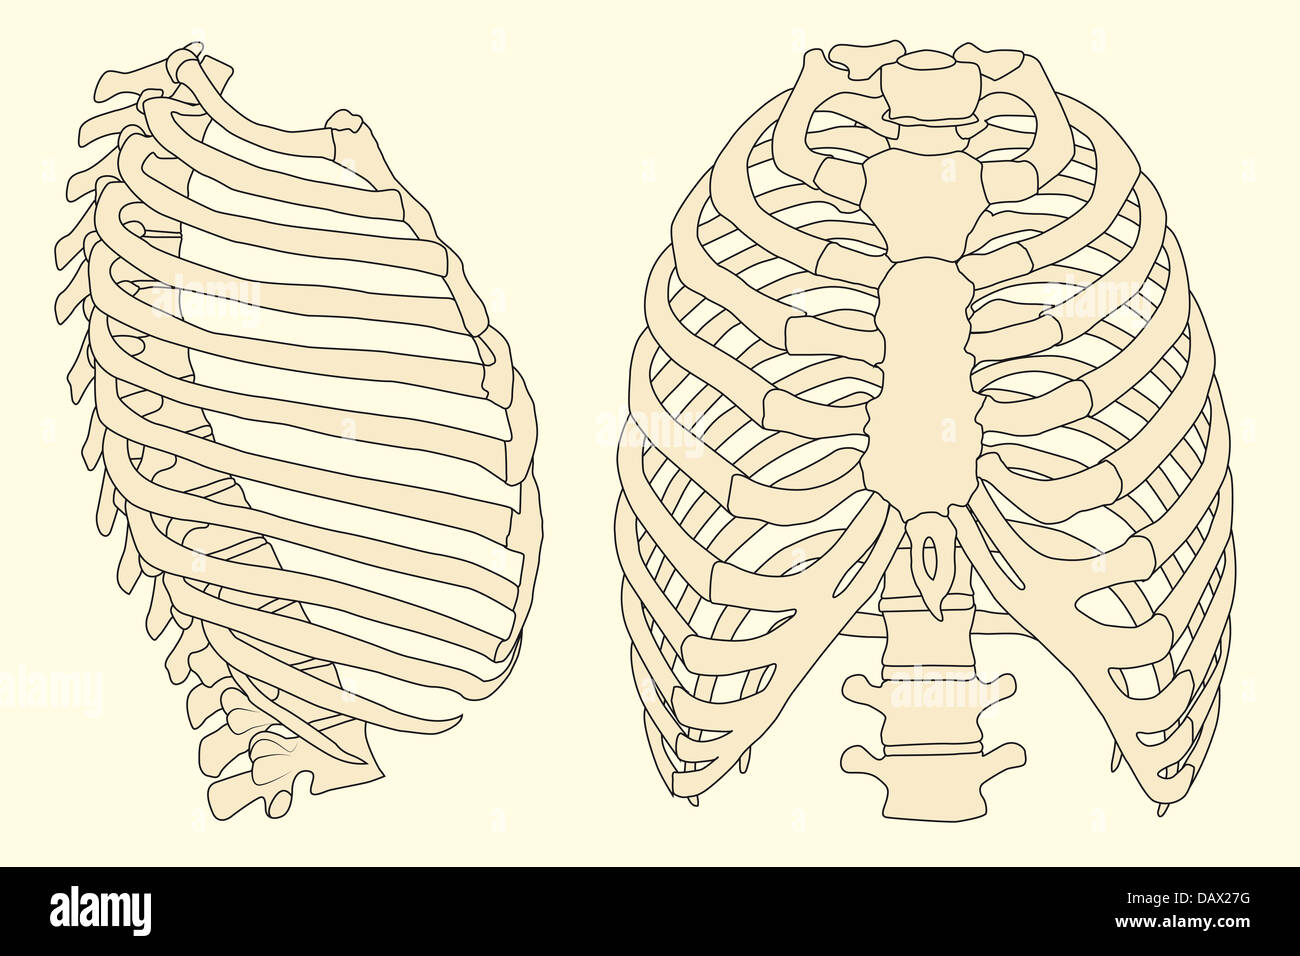 Illustrazione della nervatura umana gabbia con spina dorsale Foto Stock